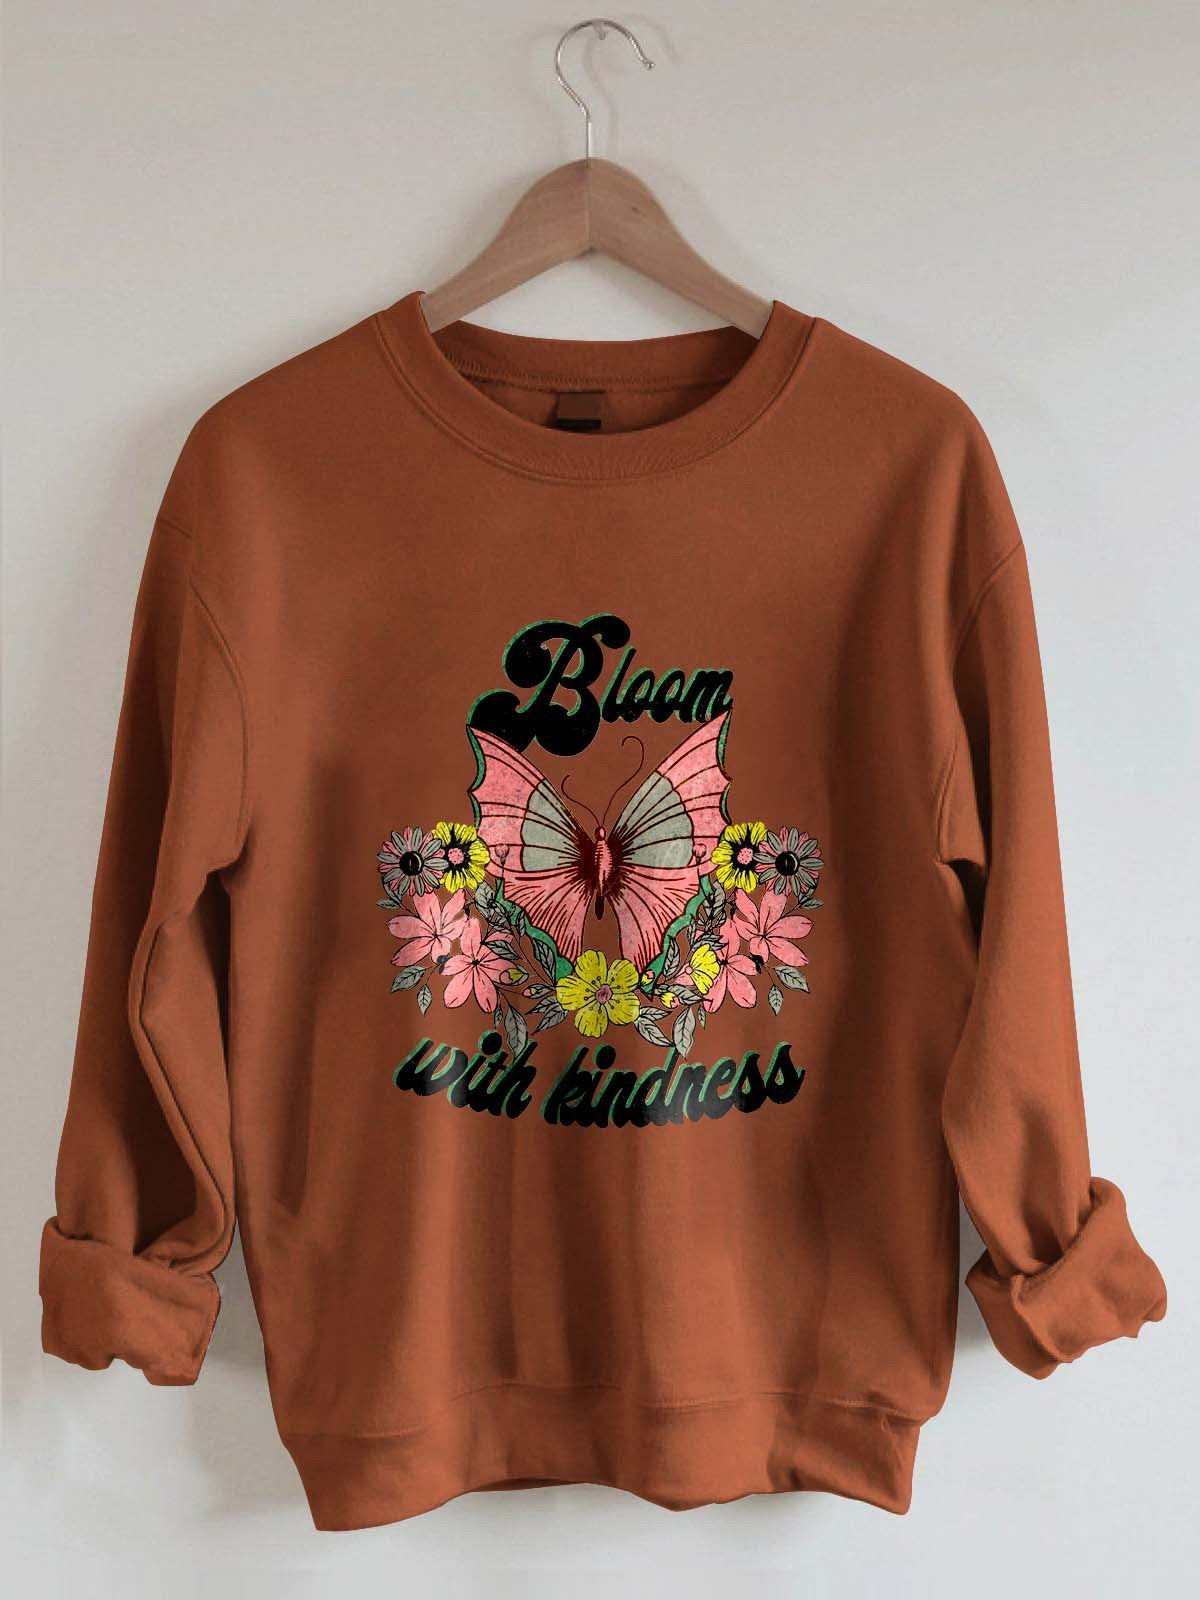 Women’S Bloom With Kindness Sweatshirt